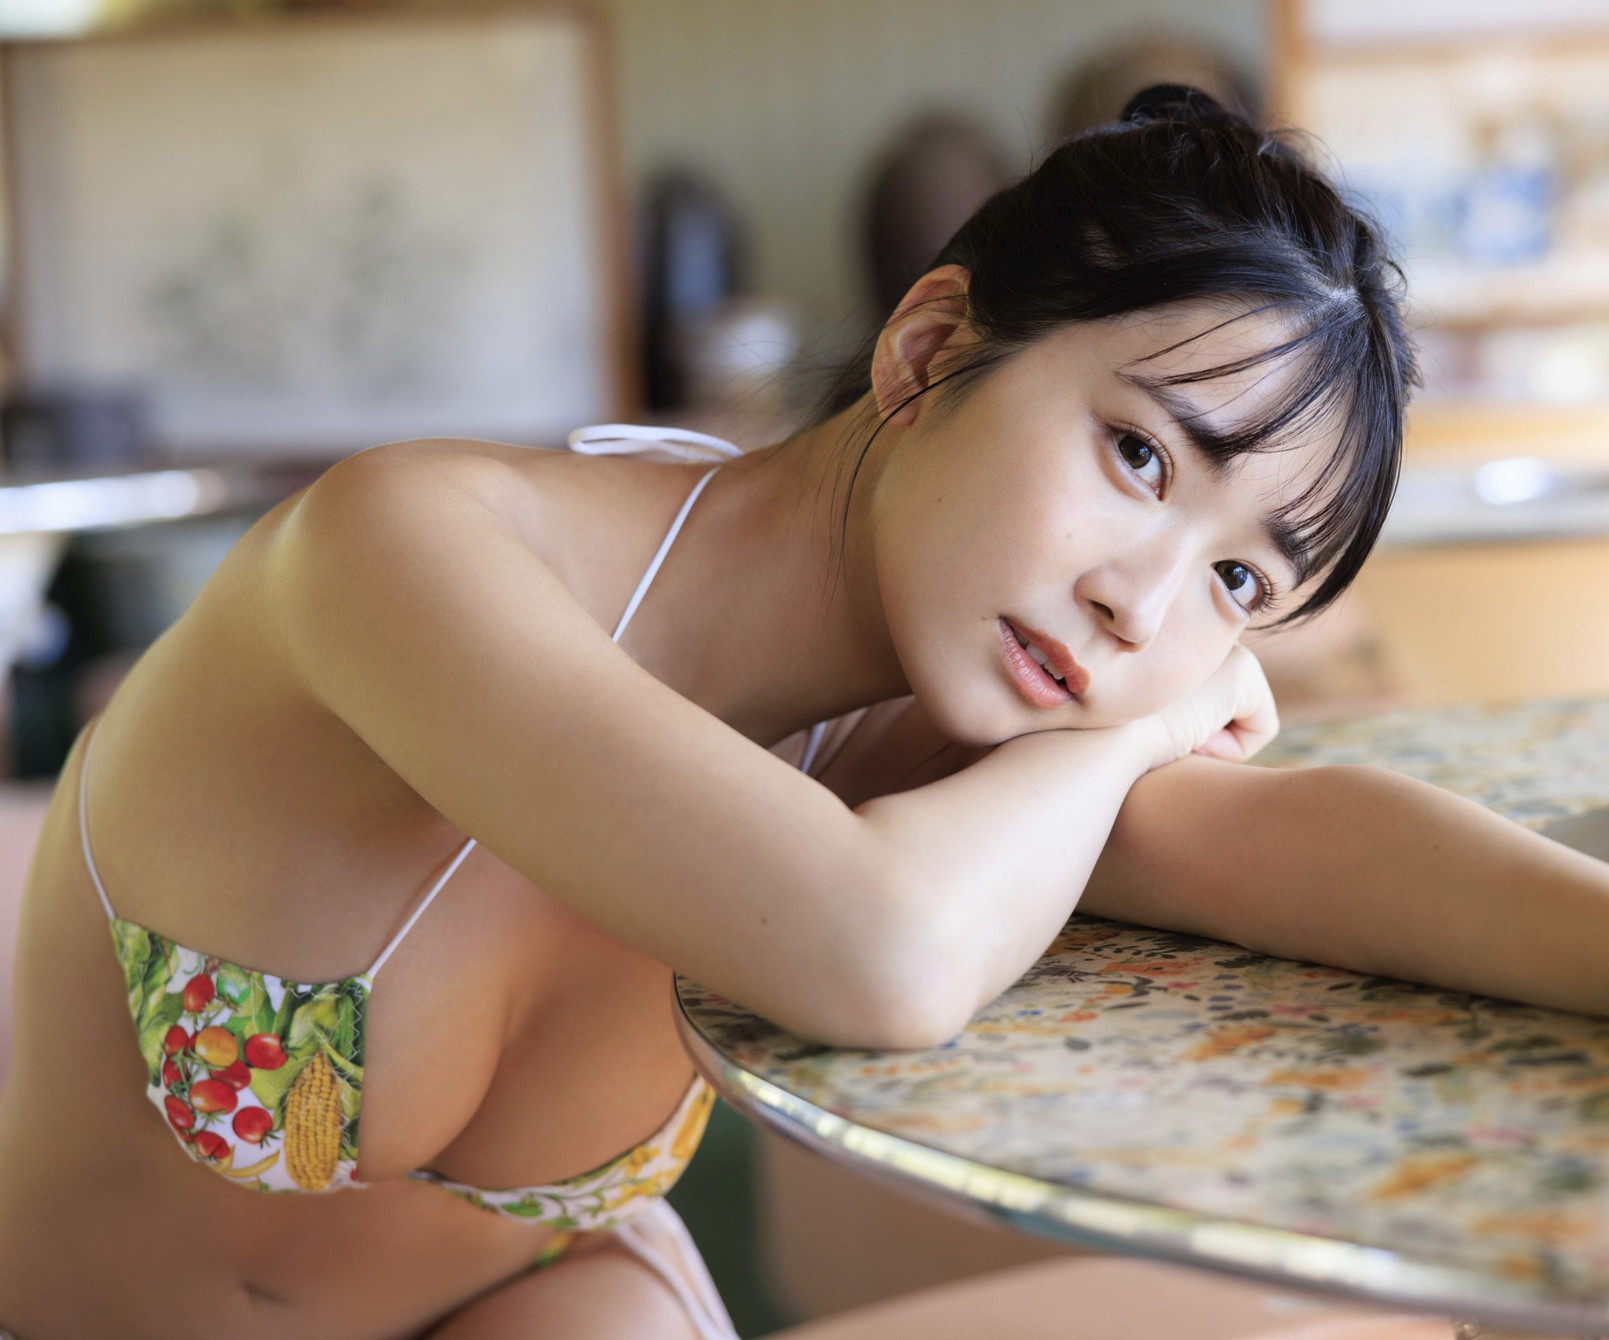 nude pictures kisumi amau 天羽希純 週プレ photo book memorial set